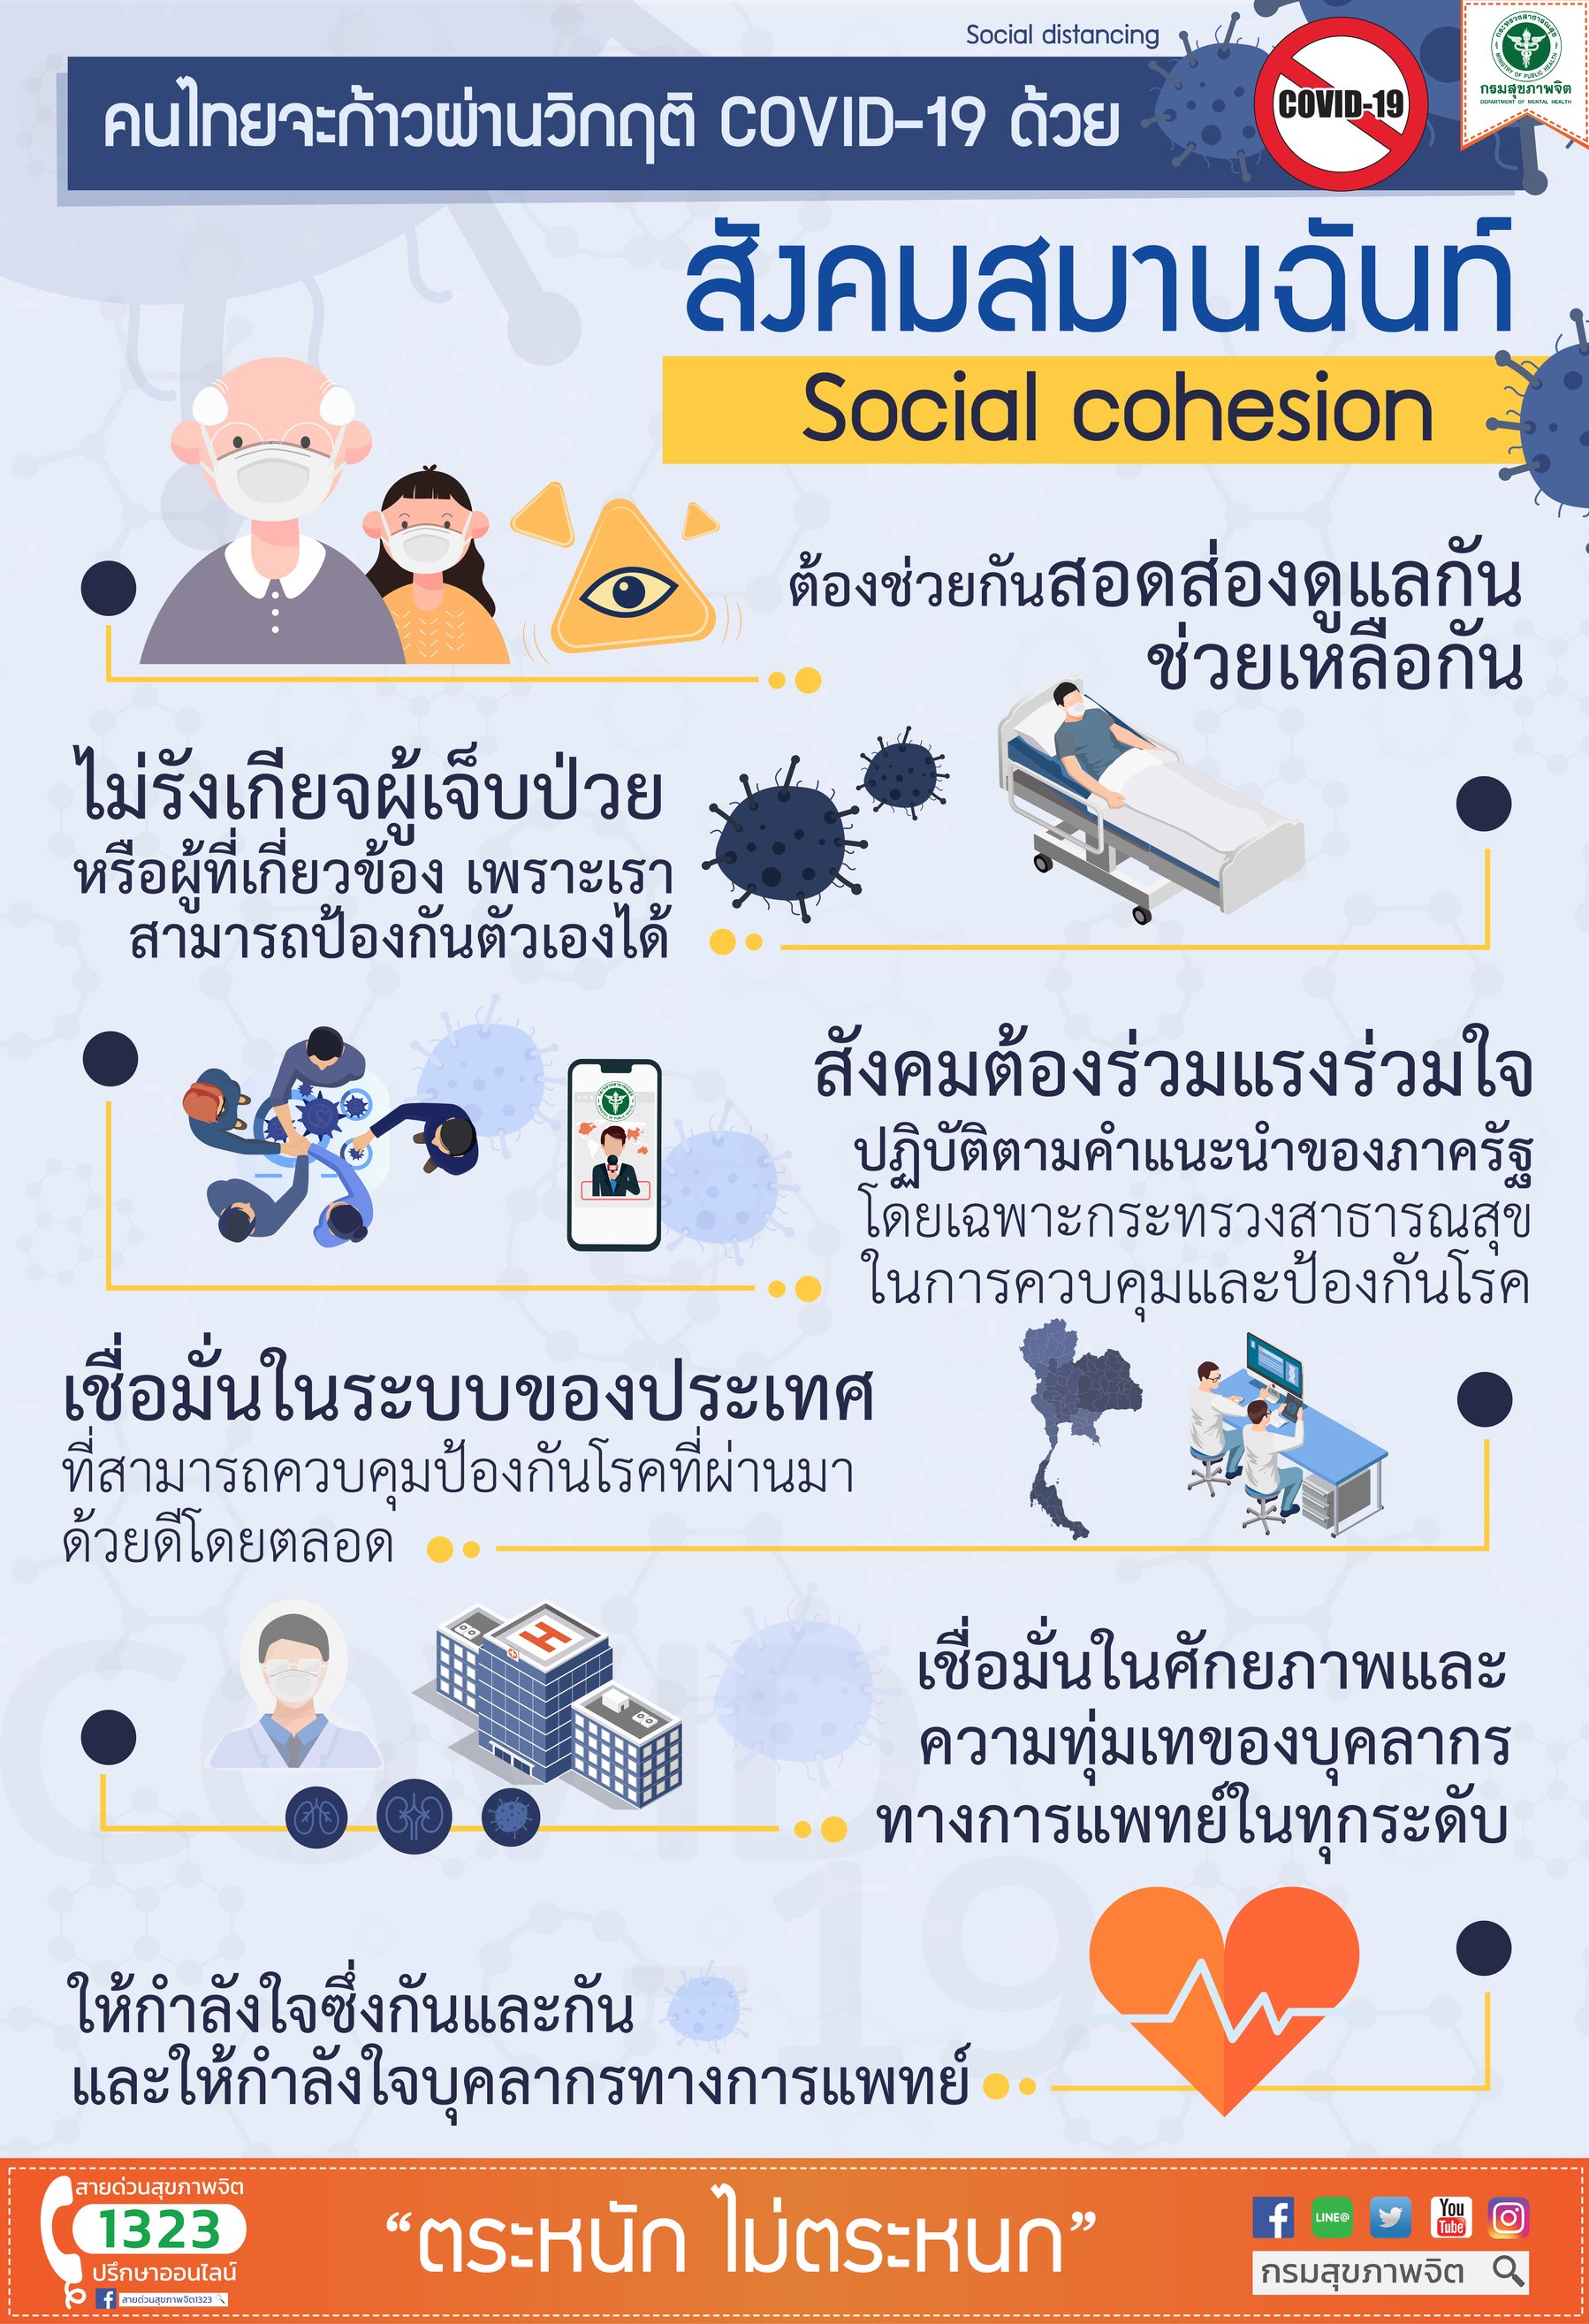 คนไทยจะก้าวผ่านวิกฤต COVID-19 ด้วยสังคมสมานฉันท์ (Social Cohesion)